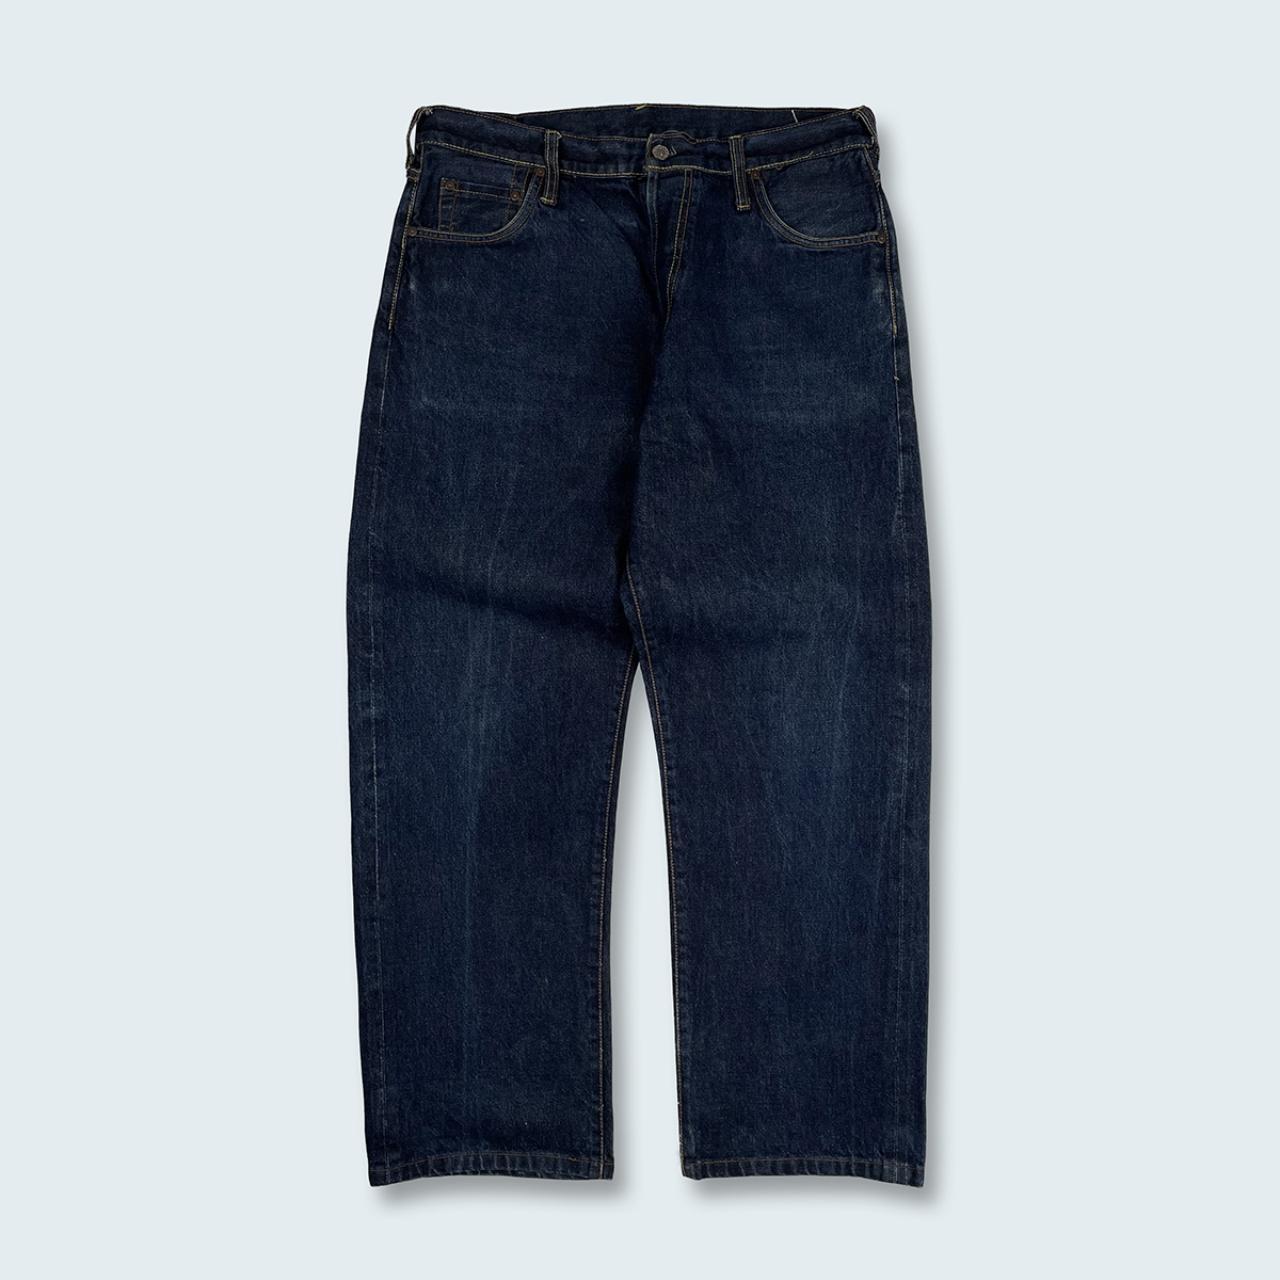 Authentic Vintage Evisu Jeans  (33")